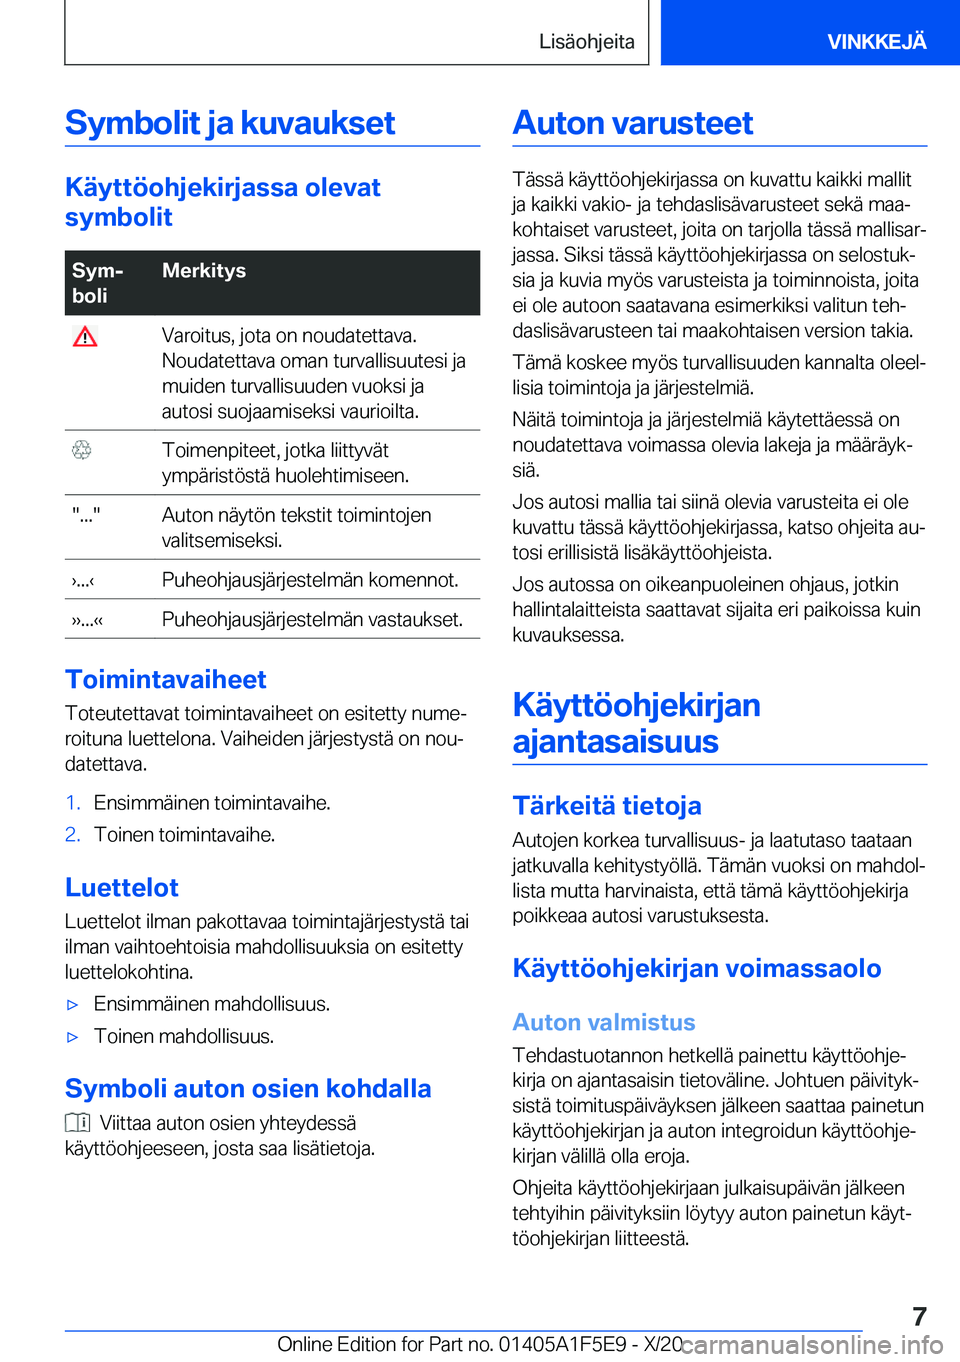 BMW X4 M 2021  Omistajan Käsikirja (in Finnish) �S�y�m�b�o�l�i�t��j�a��k�u�v�a�u�k�s�e�t
�K�